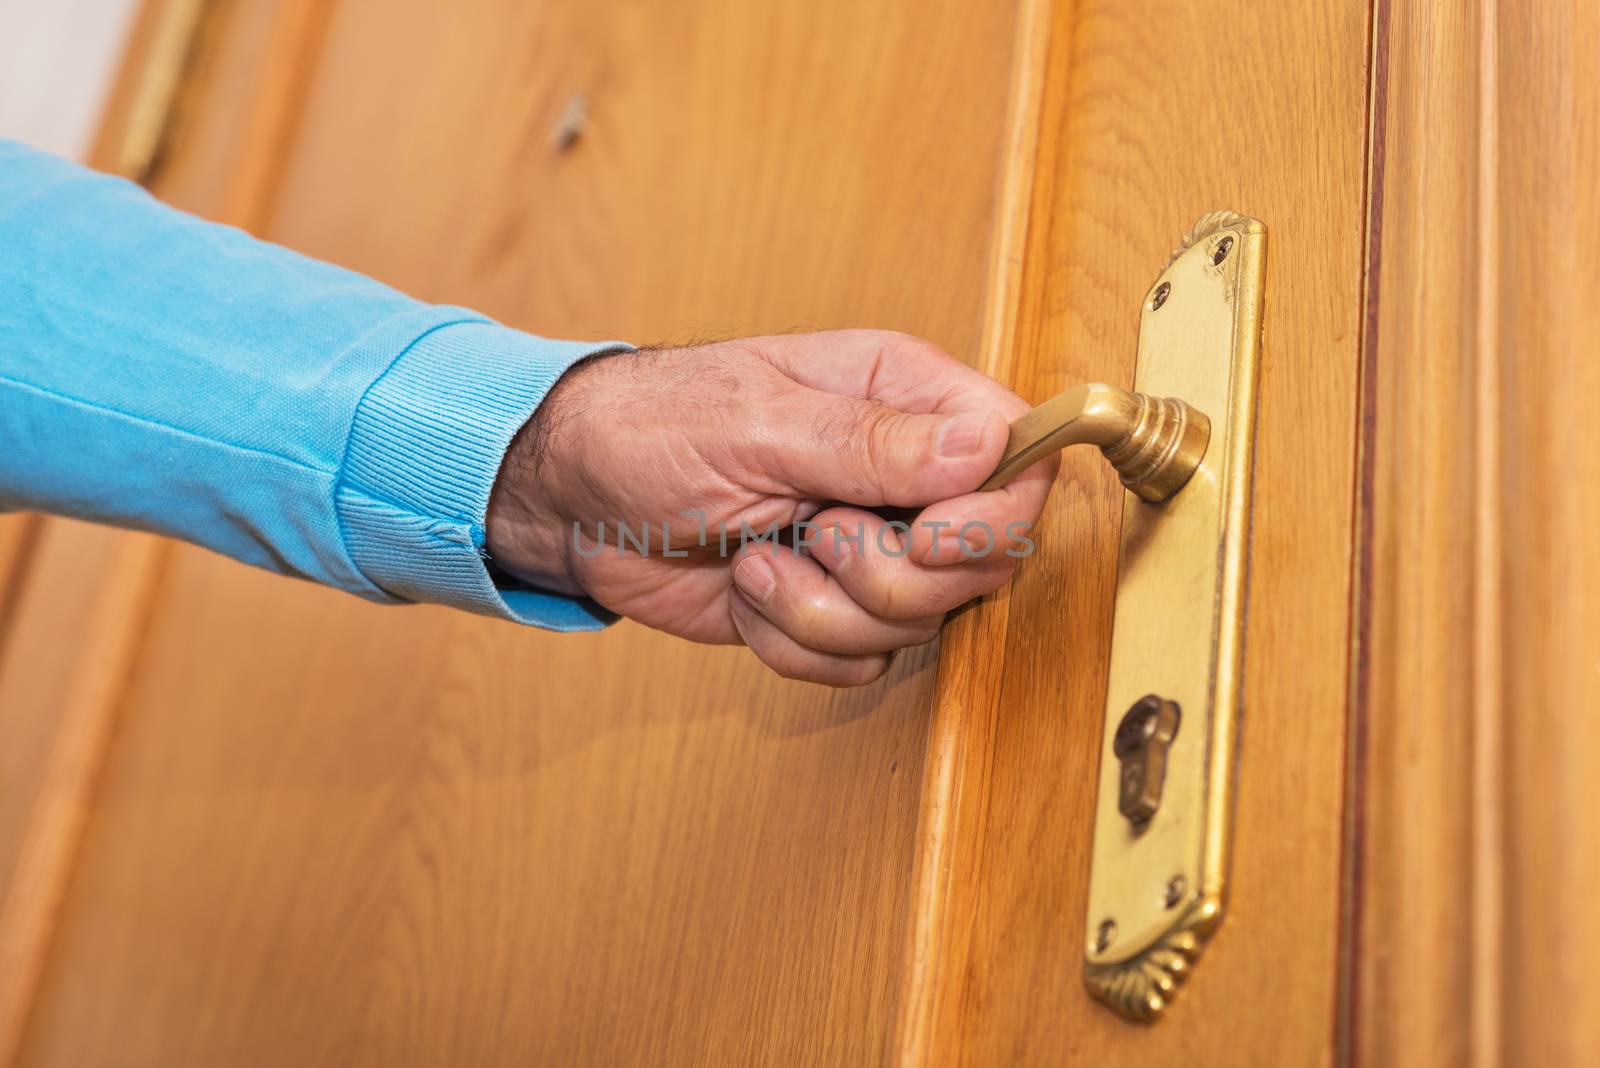 Man hand open door knob by HERRAEZ